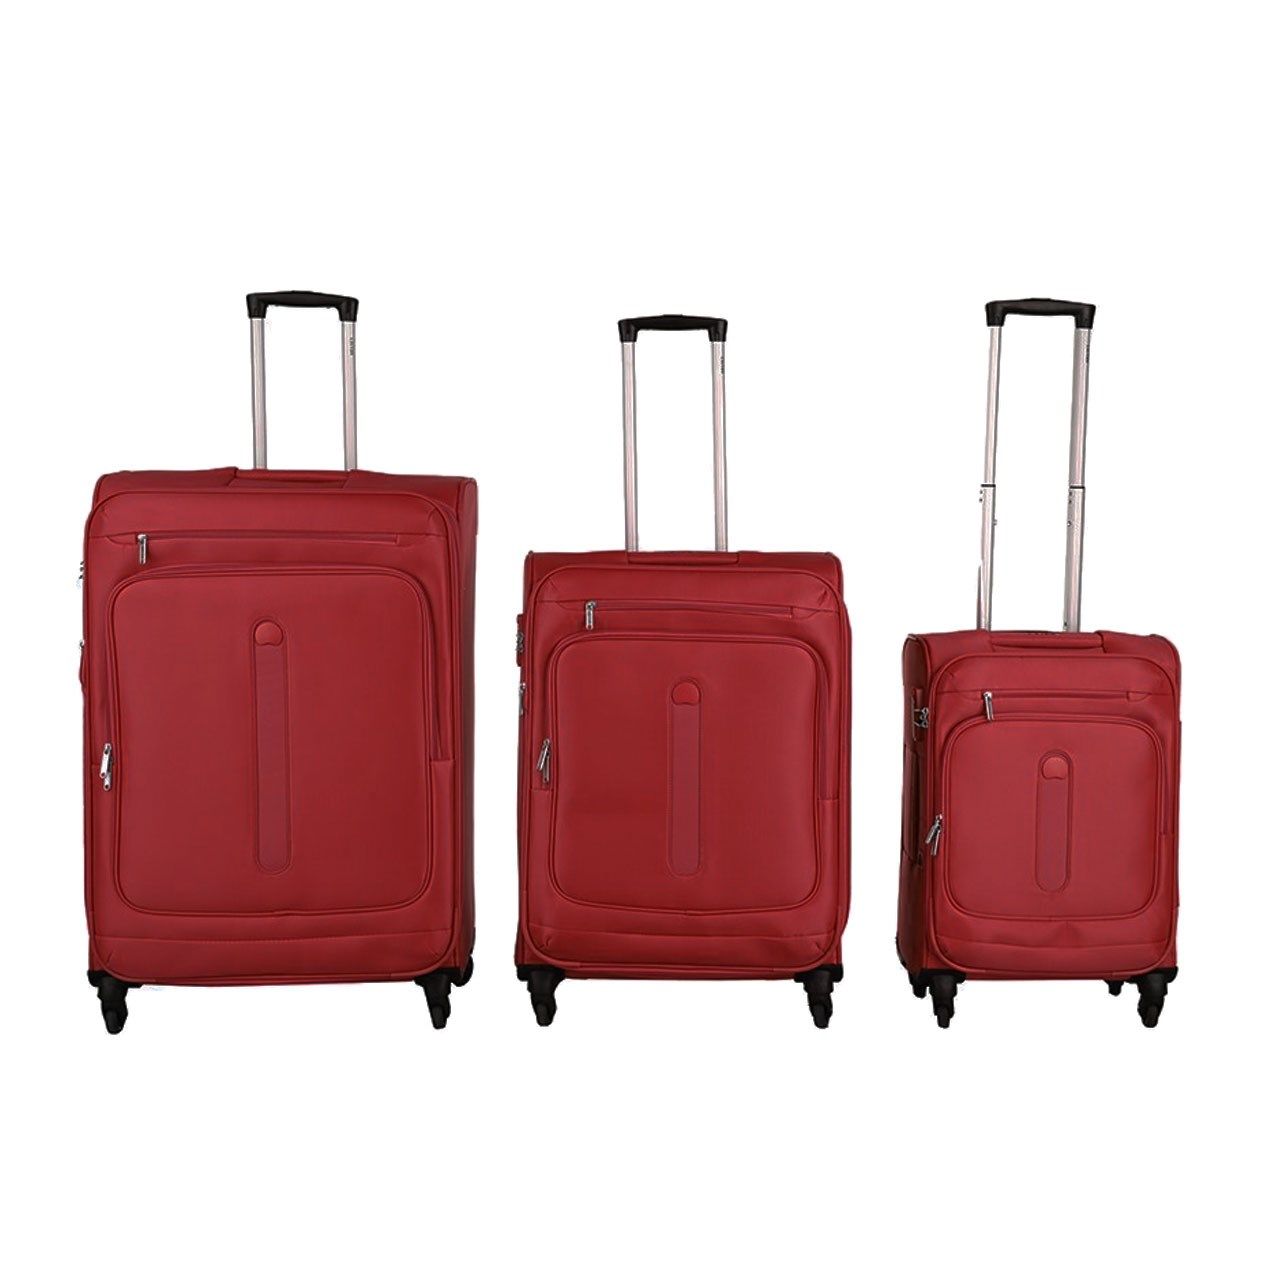 مجموعه سه عددی چمدان دلسی مدل Manitoba -  - 1